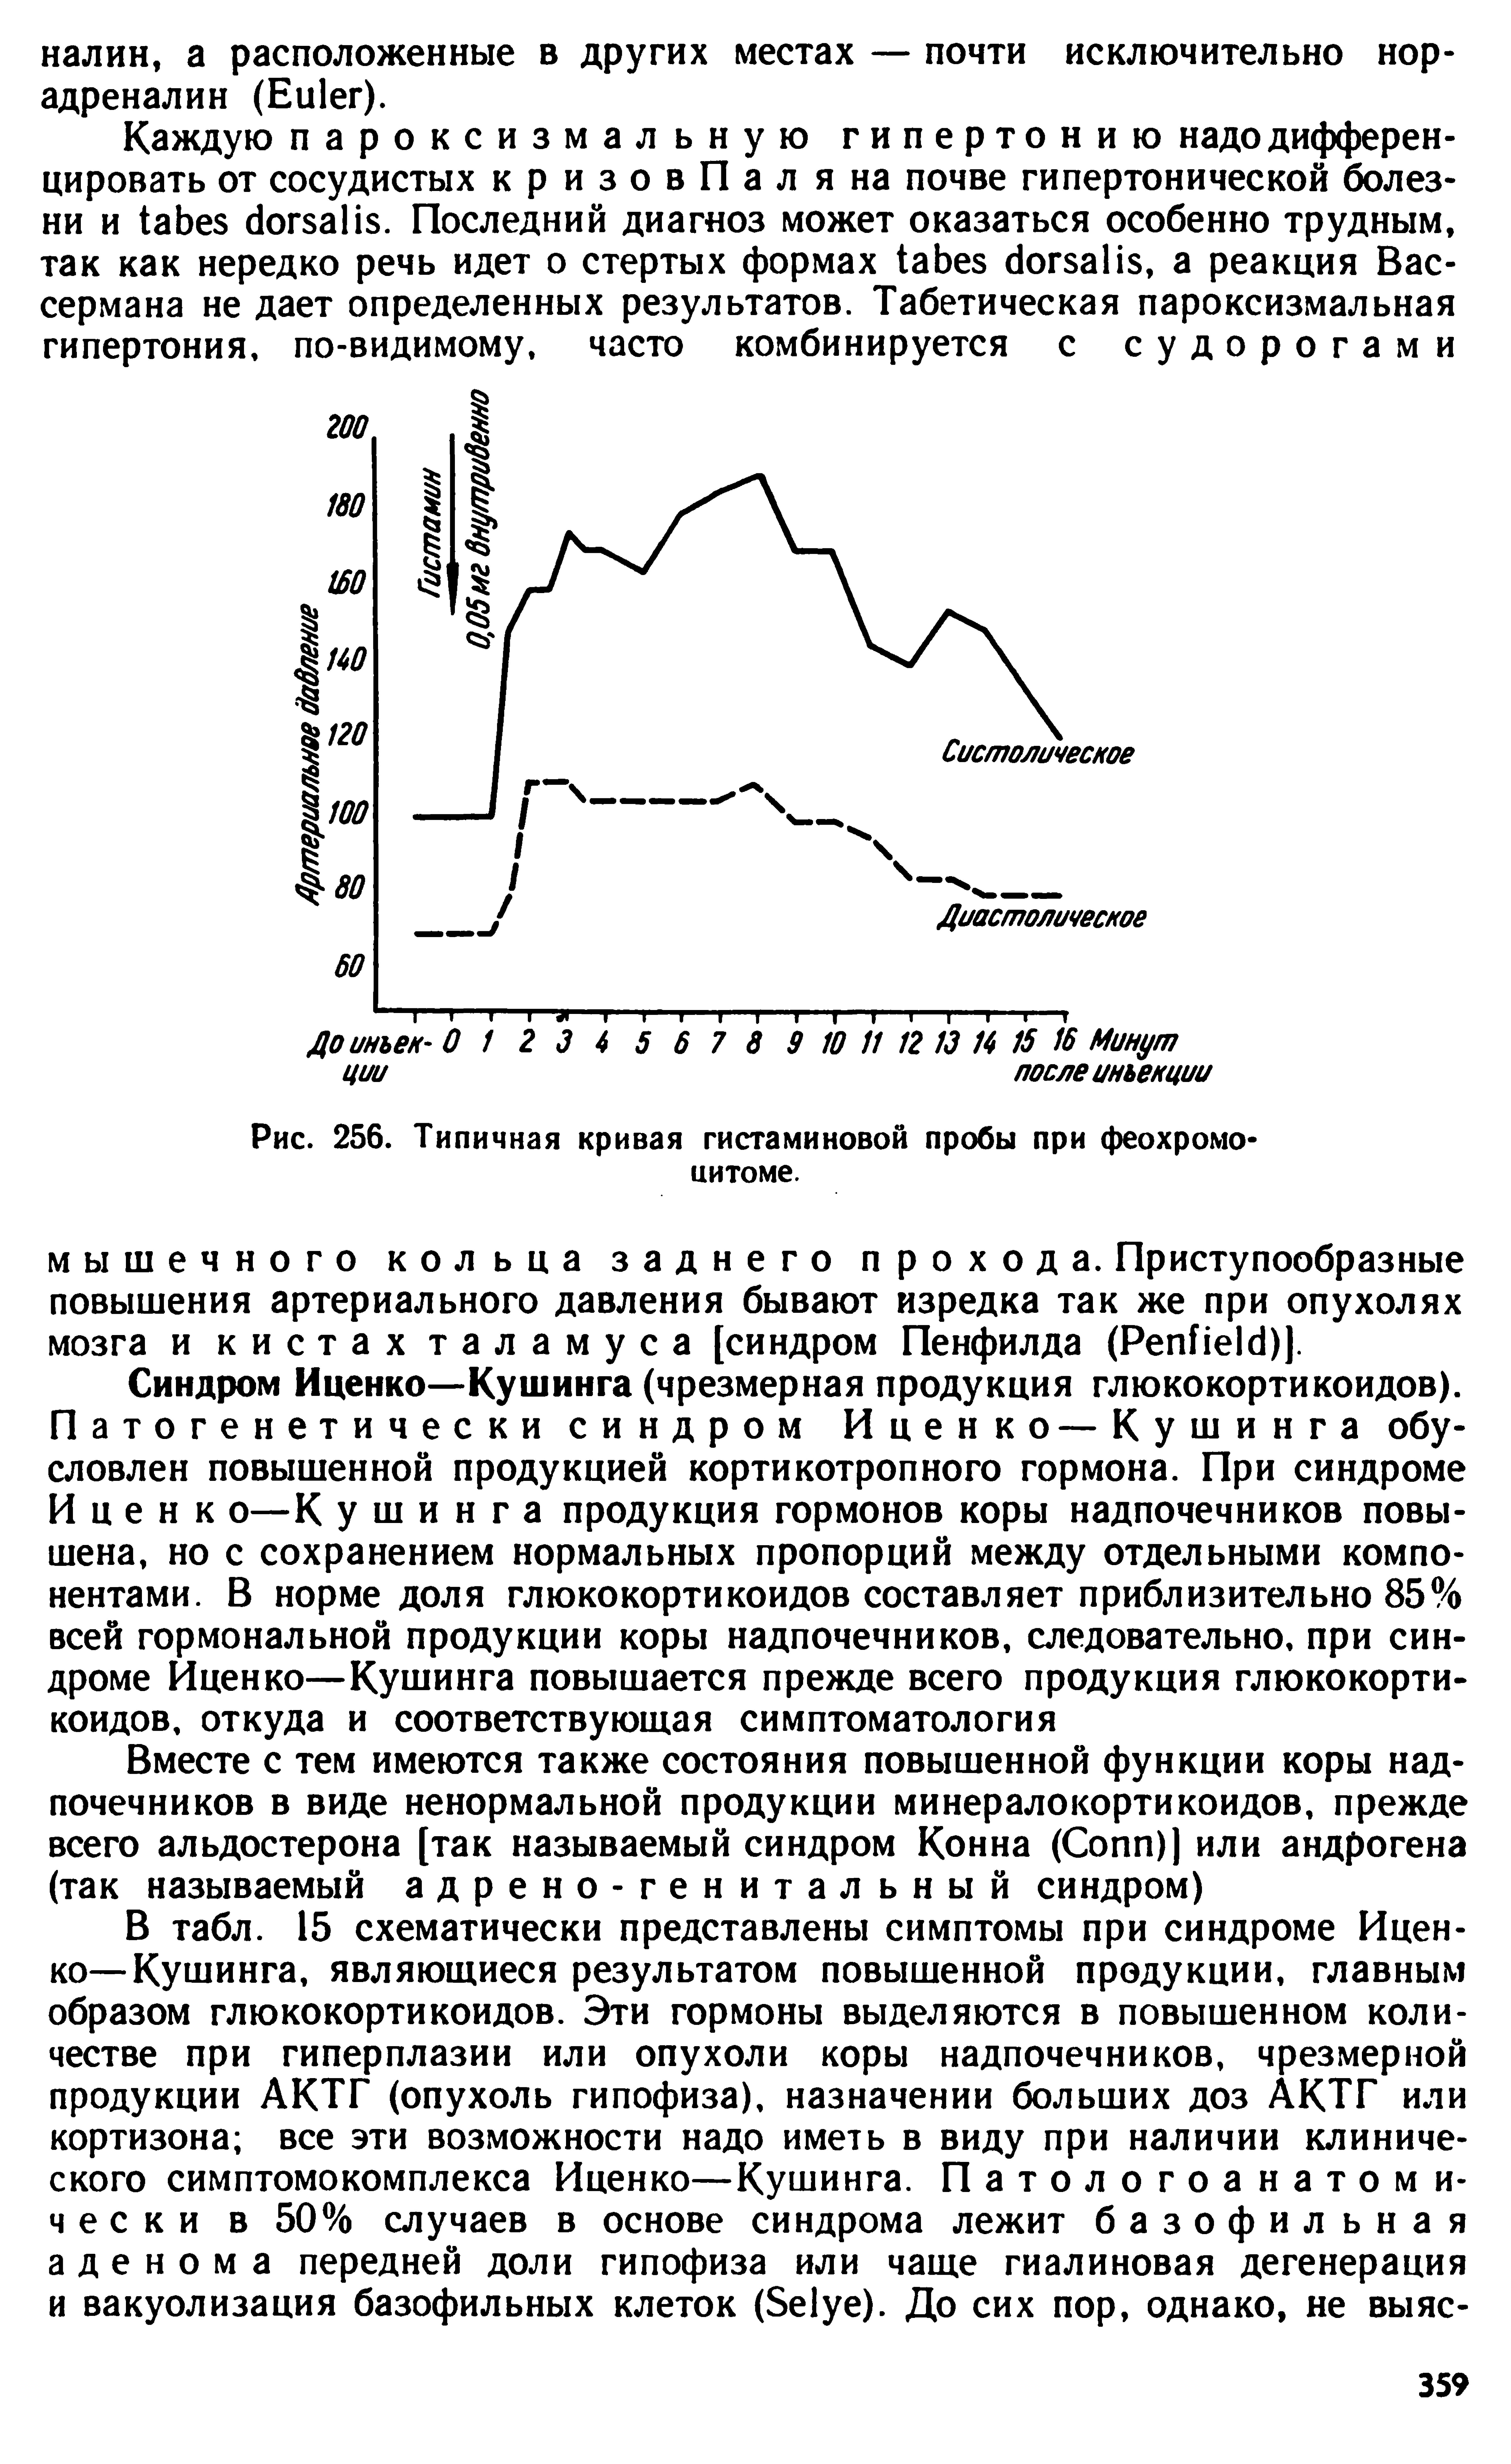 Рис. 256. Типичная кривая гистаминовой пробы при феохромо цитоме.